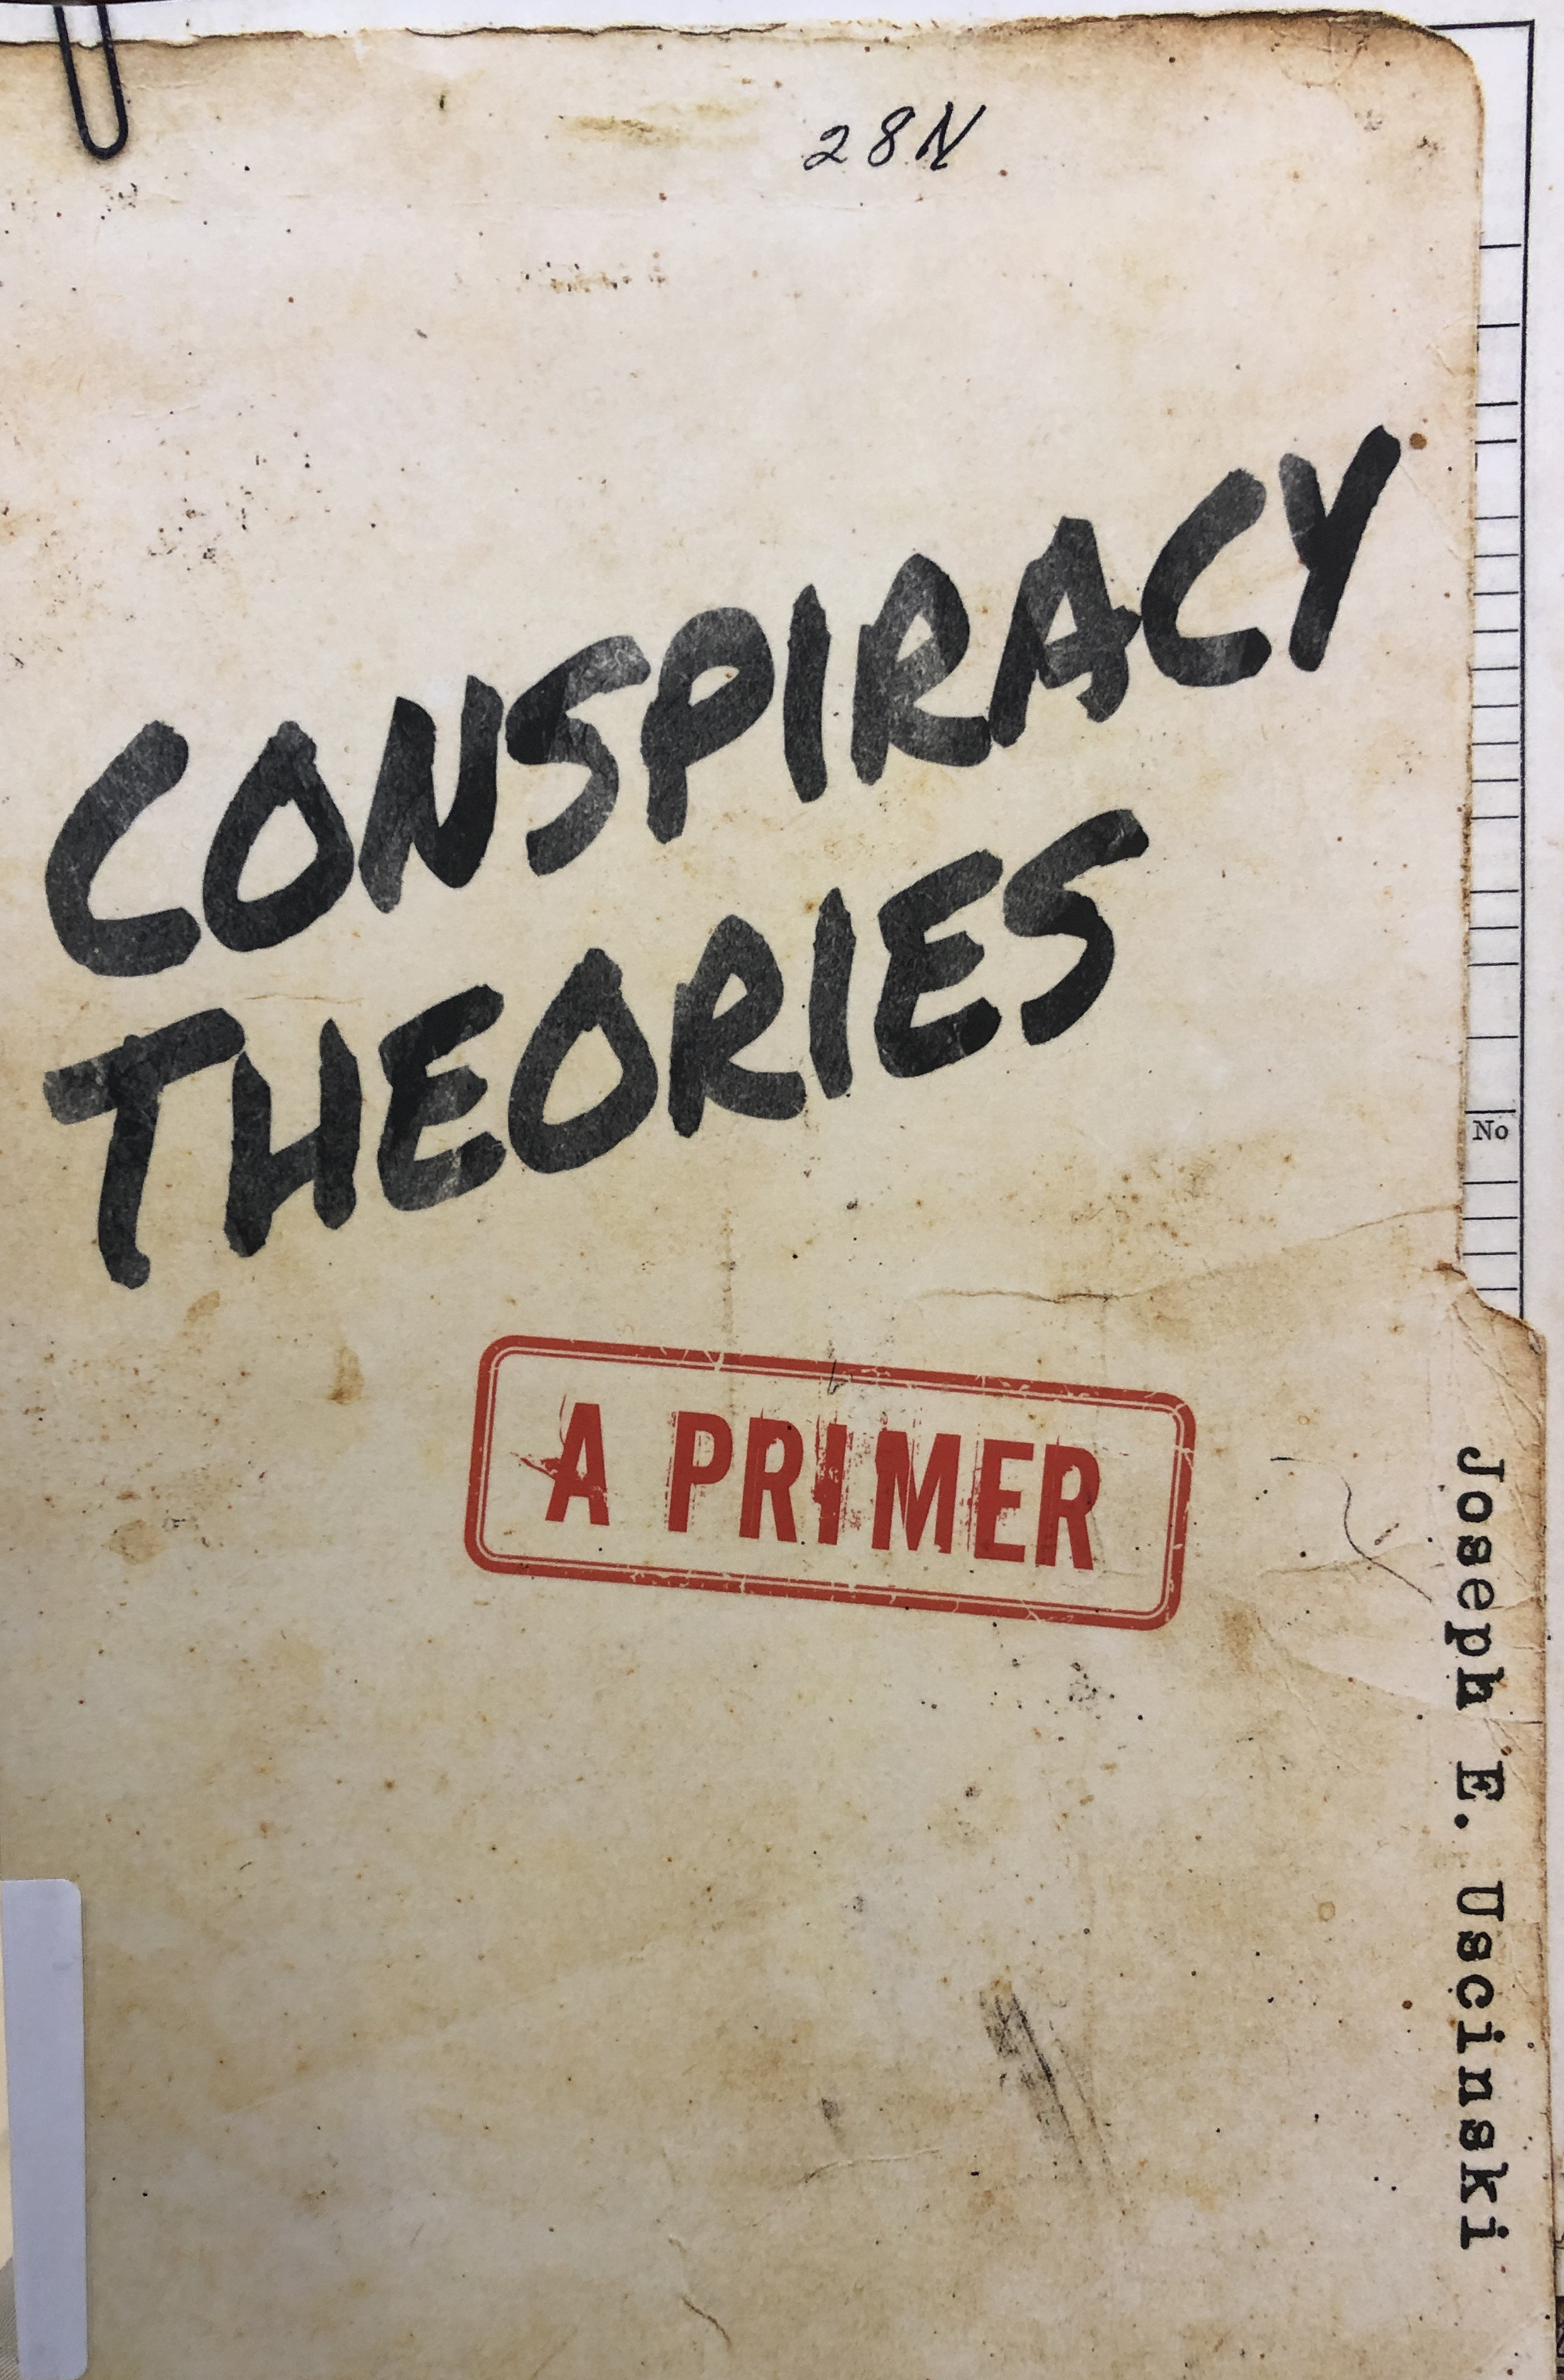 Joseph E. Uscinski Conspiracy Theories című könyvének borítója